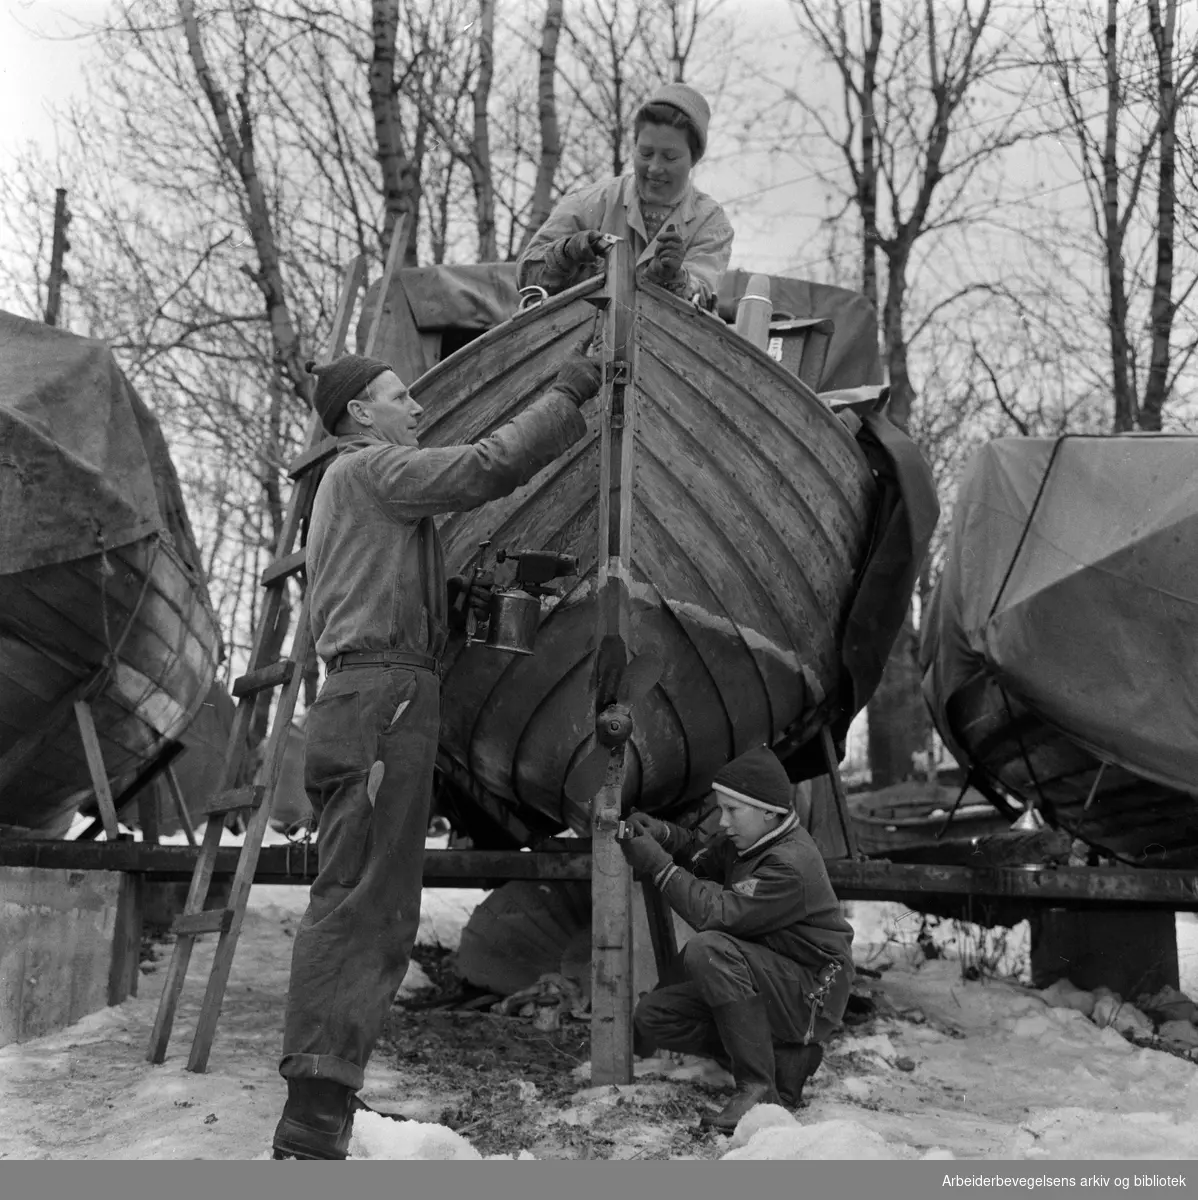 Trebåter i vinteropplag. Årets båtpuss. Osloområdet. April 1958.